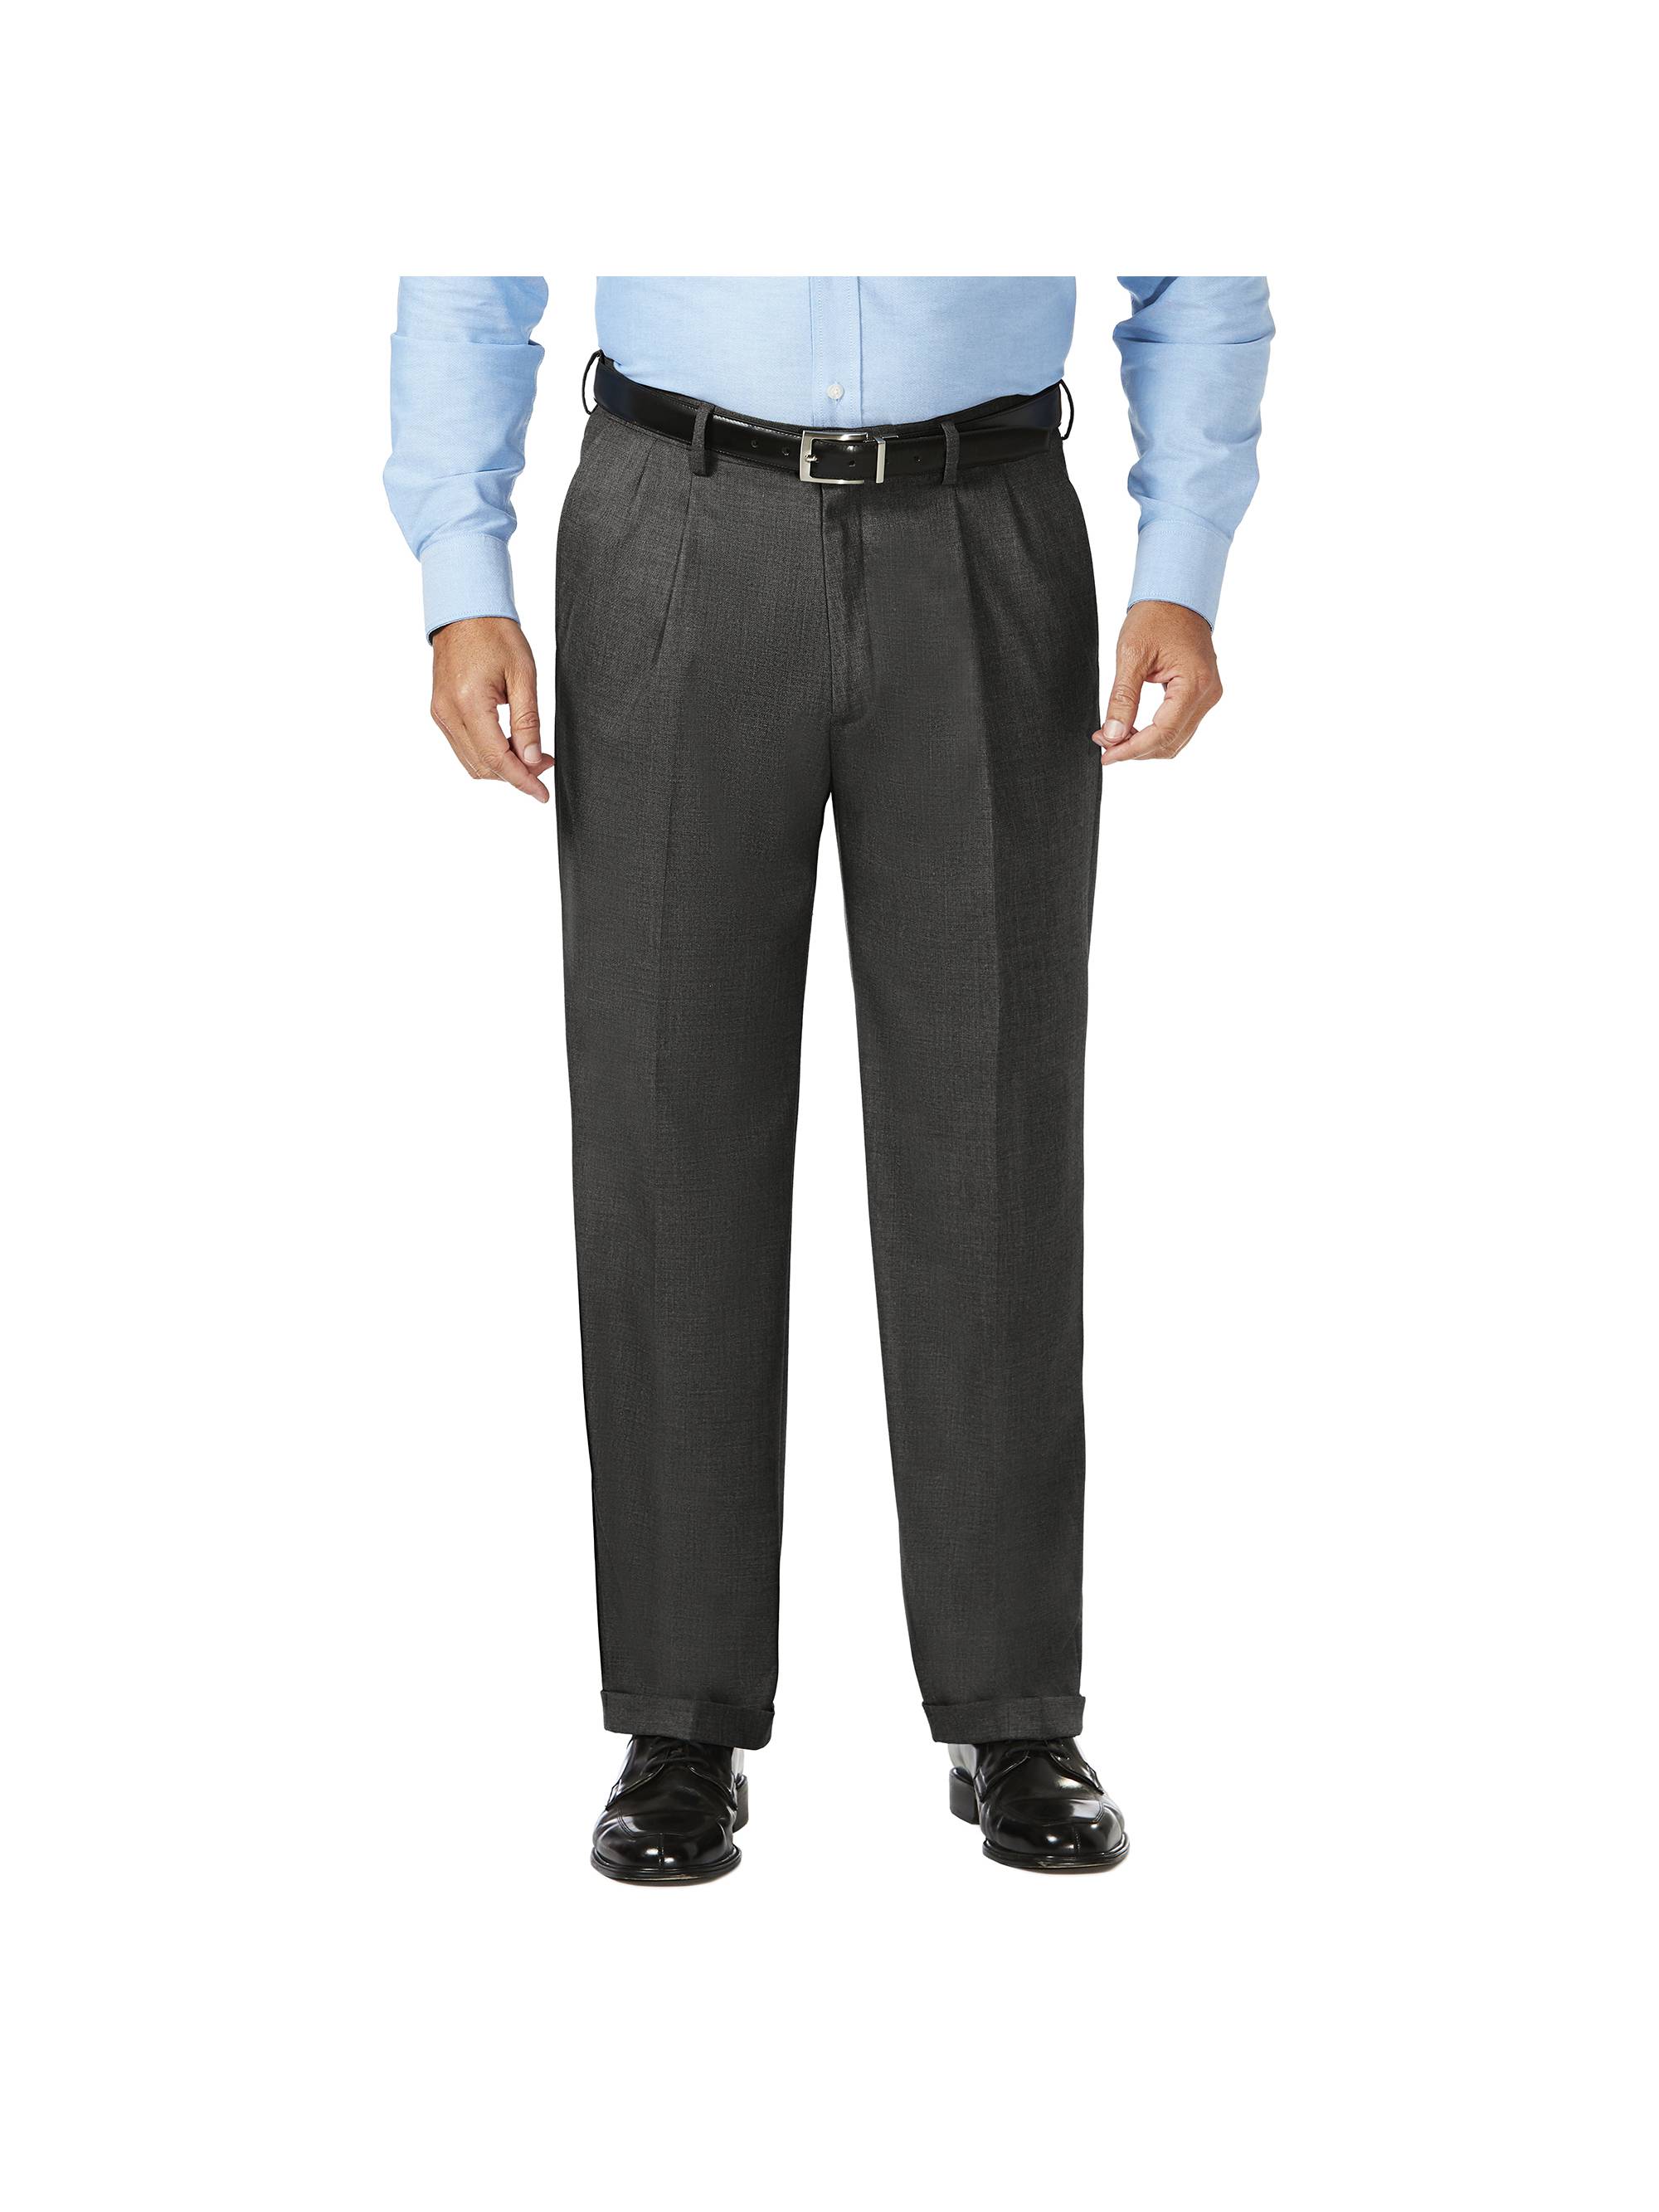 JM Haggar Men's Big & Tall Sharkskin Pleat Front Dress Pant  Classic Fit HD90654 - image 1 of 9